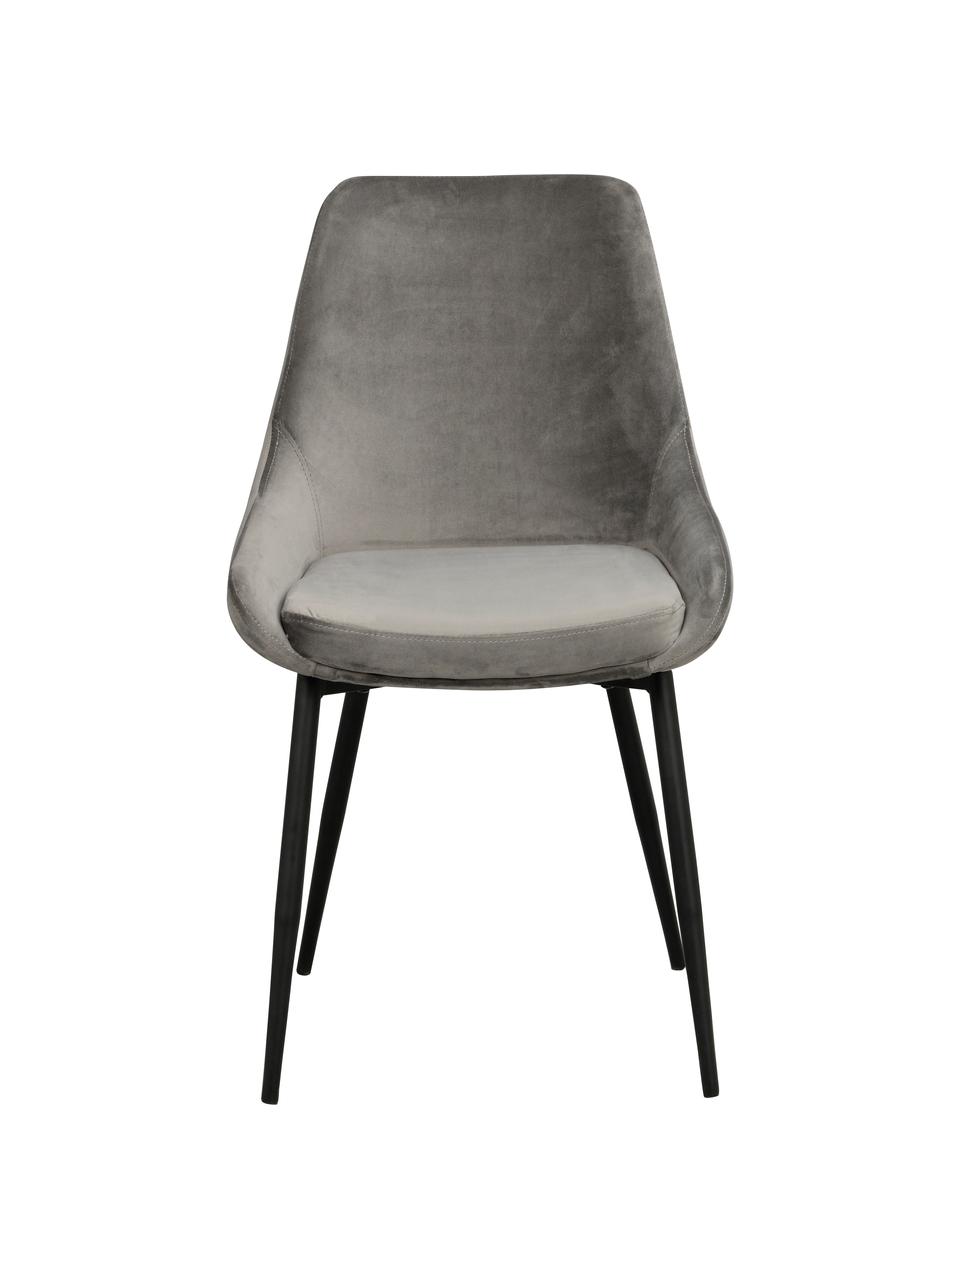 Chaise rembourrée en velours gris Sierra, 2 pièces, Gris, noir, larg. 49 x prof. 55 cm